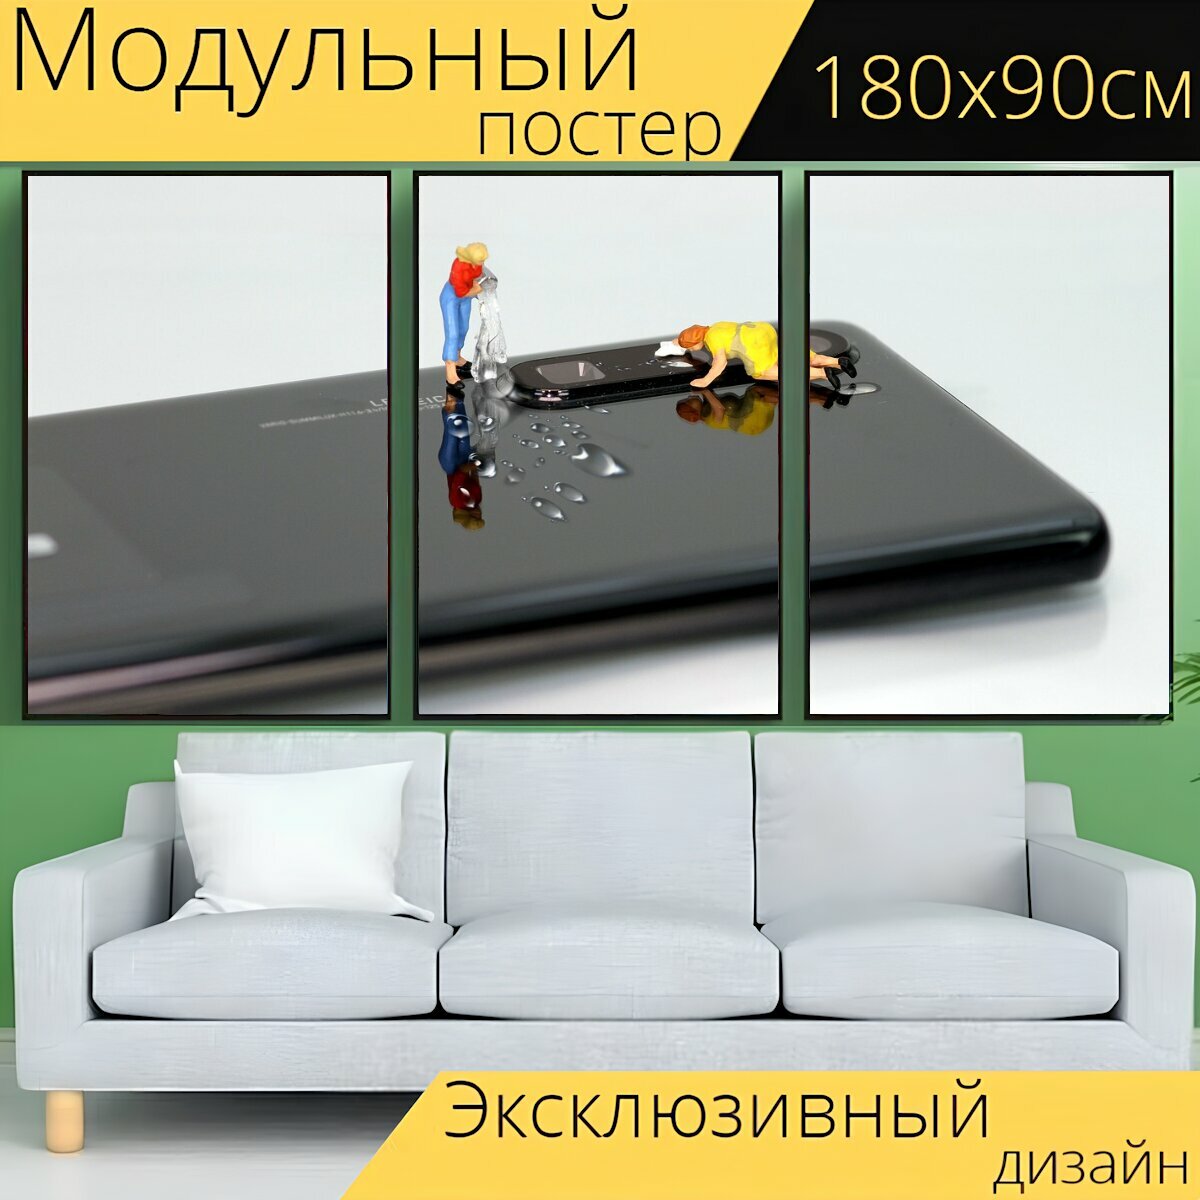 Модульный постер "Мобильный, камера, миниатюрные фигурки" 180 x 90 см. для интерьера